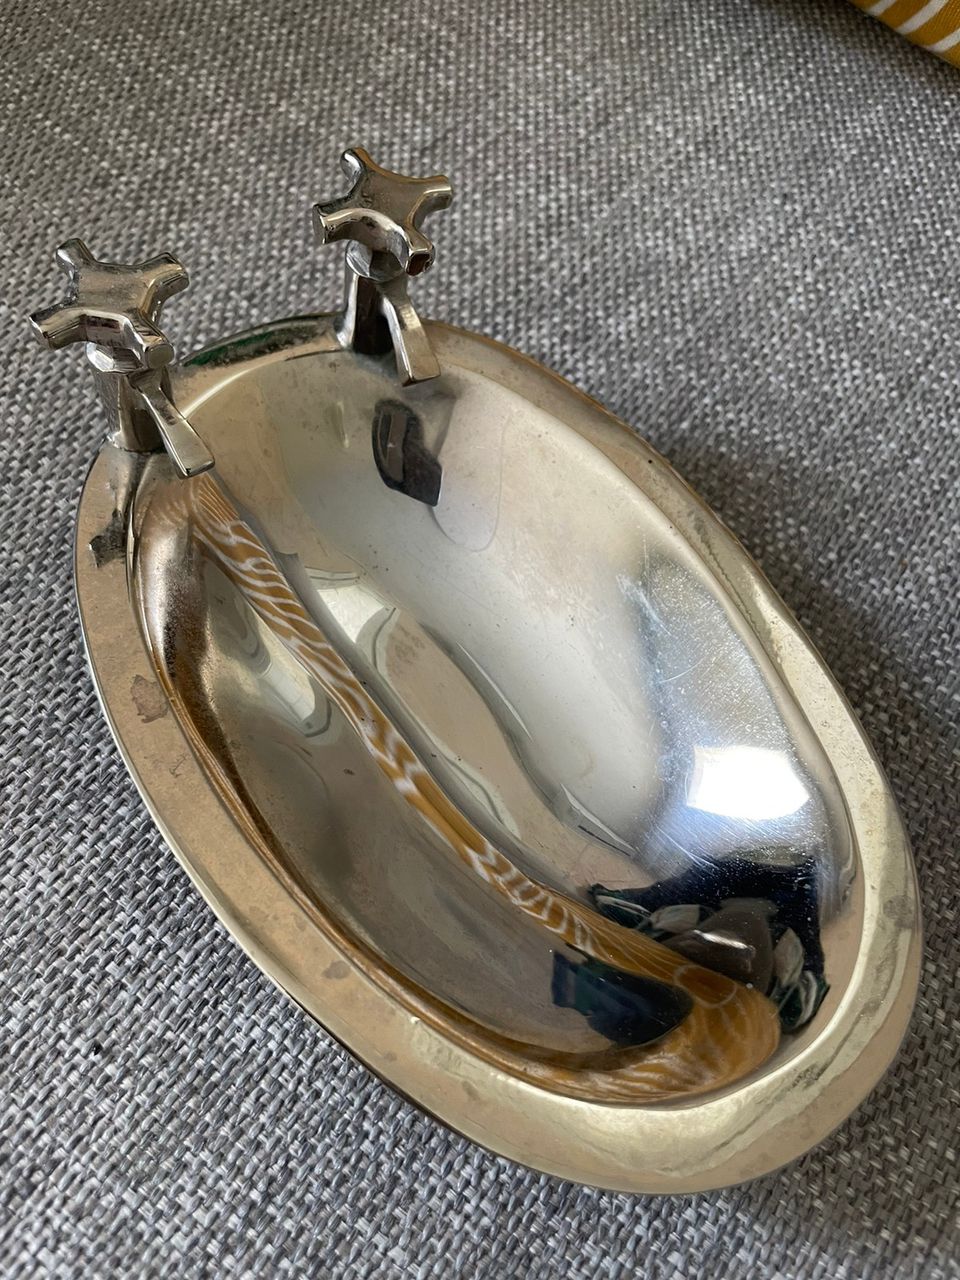 Metallinen mini allas / kylpyallas saippua-alusta